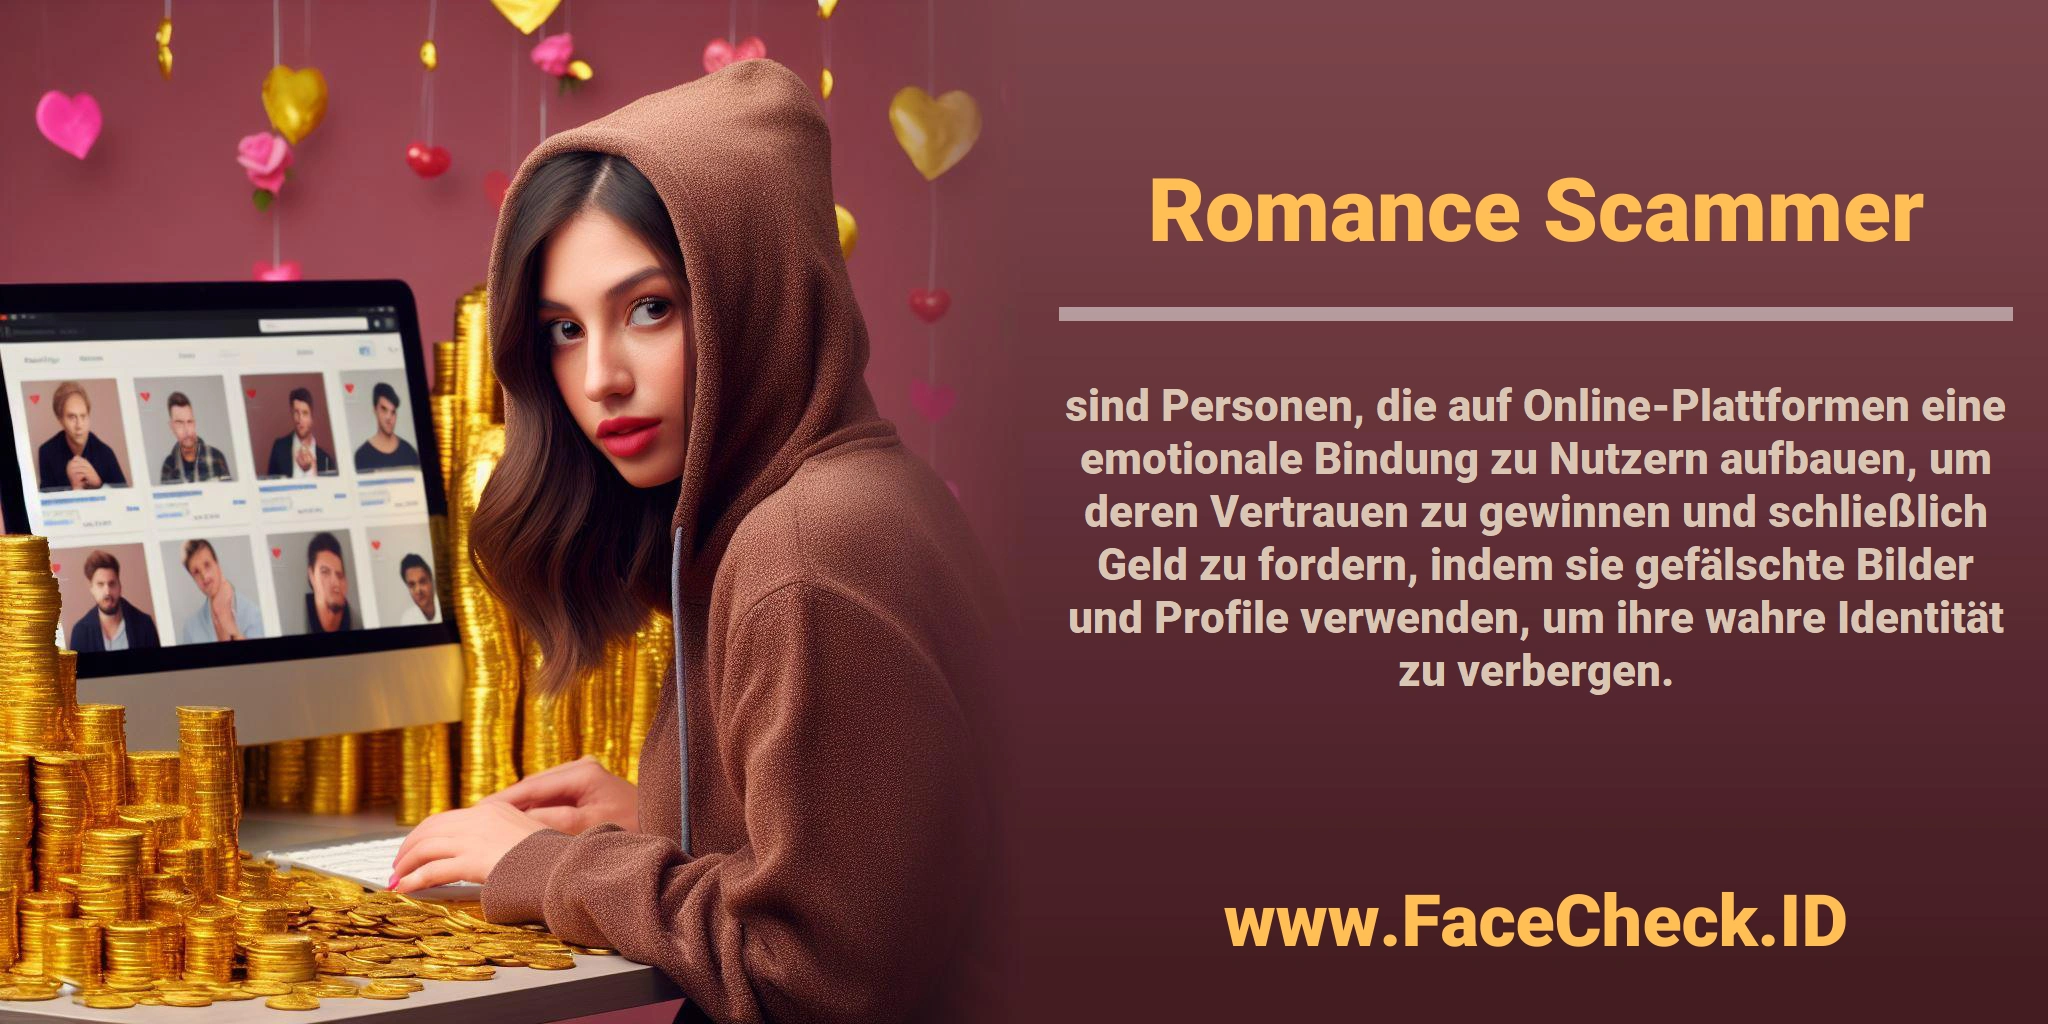 <b>Romance Scammer</b> sind Personen, die auf Online-Plattformen eine emotionale Bindung zu Nutzern aufbauen, um deren Vertrauen zu gewinnen und schließlich Geld zu fordern, indem sie gefälschte Bilder und Profile verwenden, um ihre wahre Identität zu verbergen.